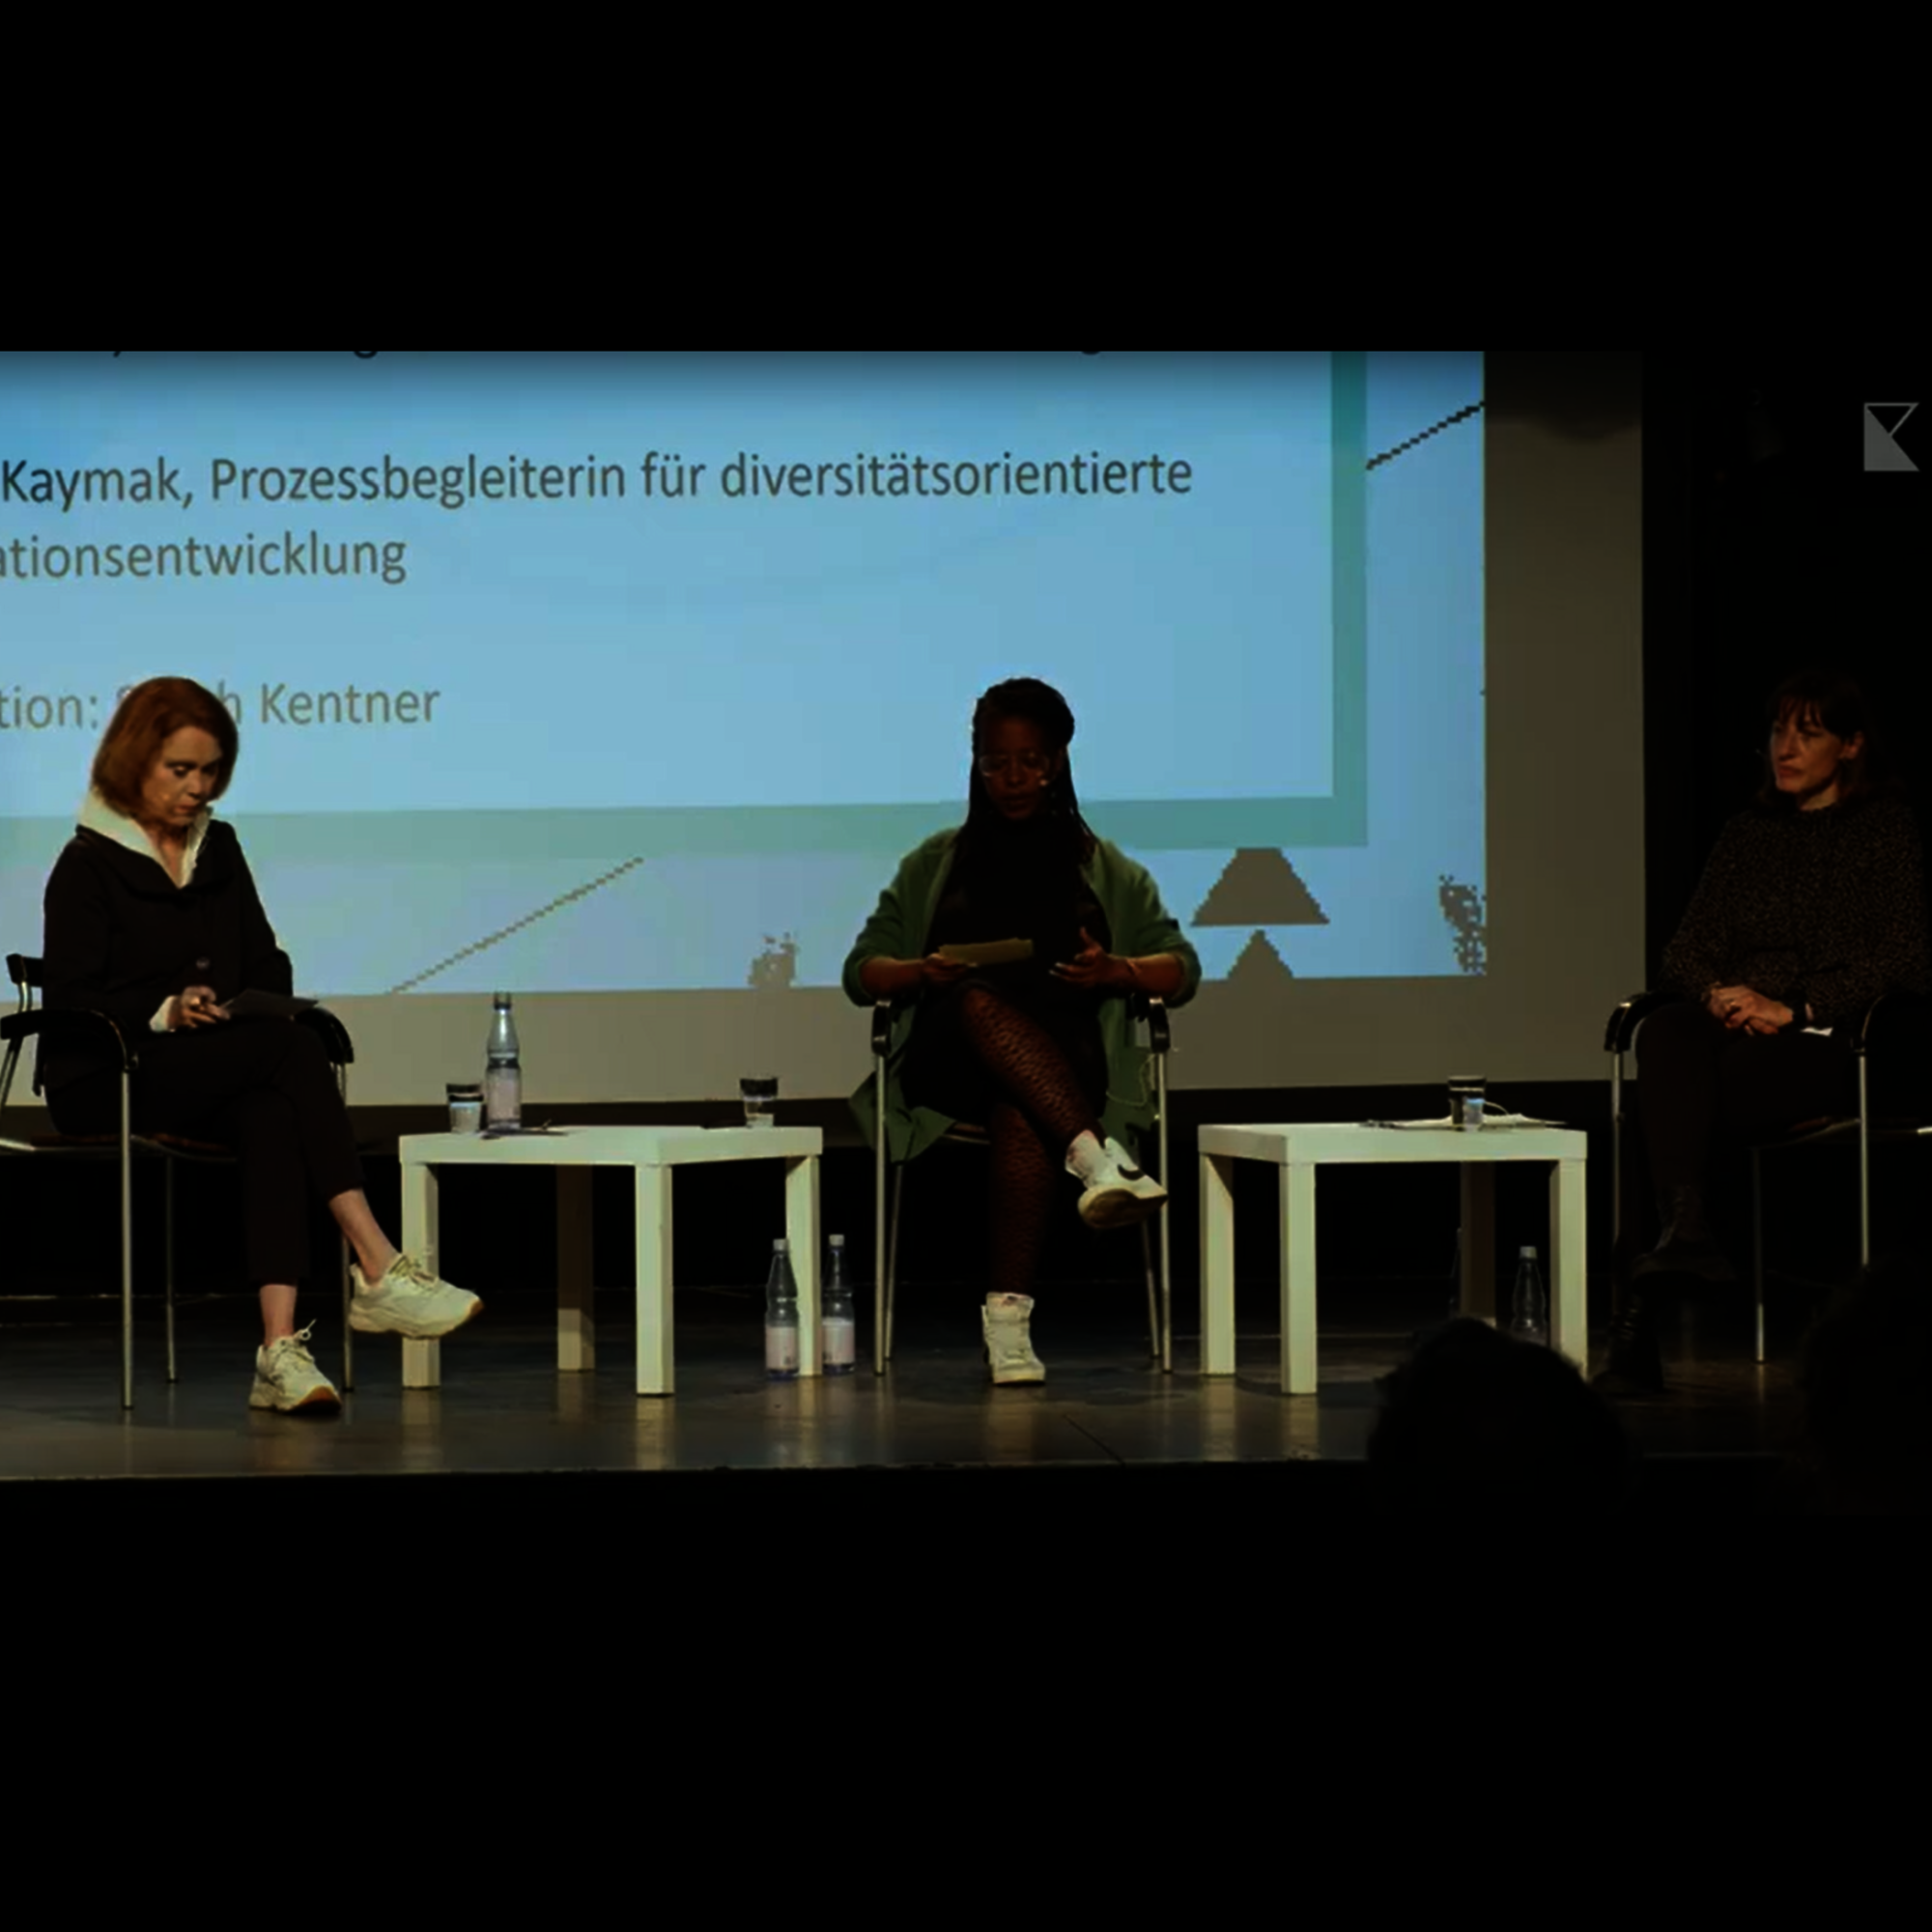 Foto einer Gesprächssituation auf der Bühne der Landesfachtagung "Kulturarbeit heute". Im Bild sind die Moderatorin Sarah Kentner und die Diskutantinnen Petra Olschowski und Handan Kaymak.